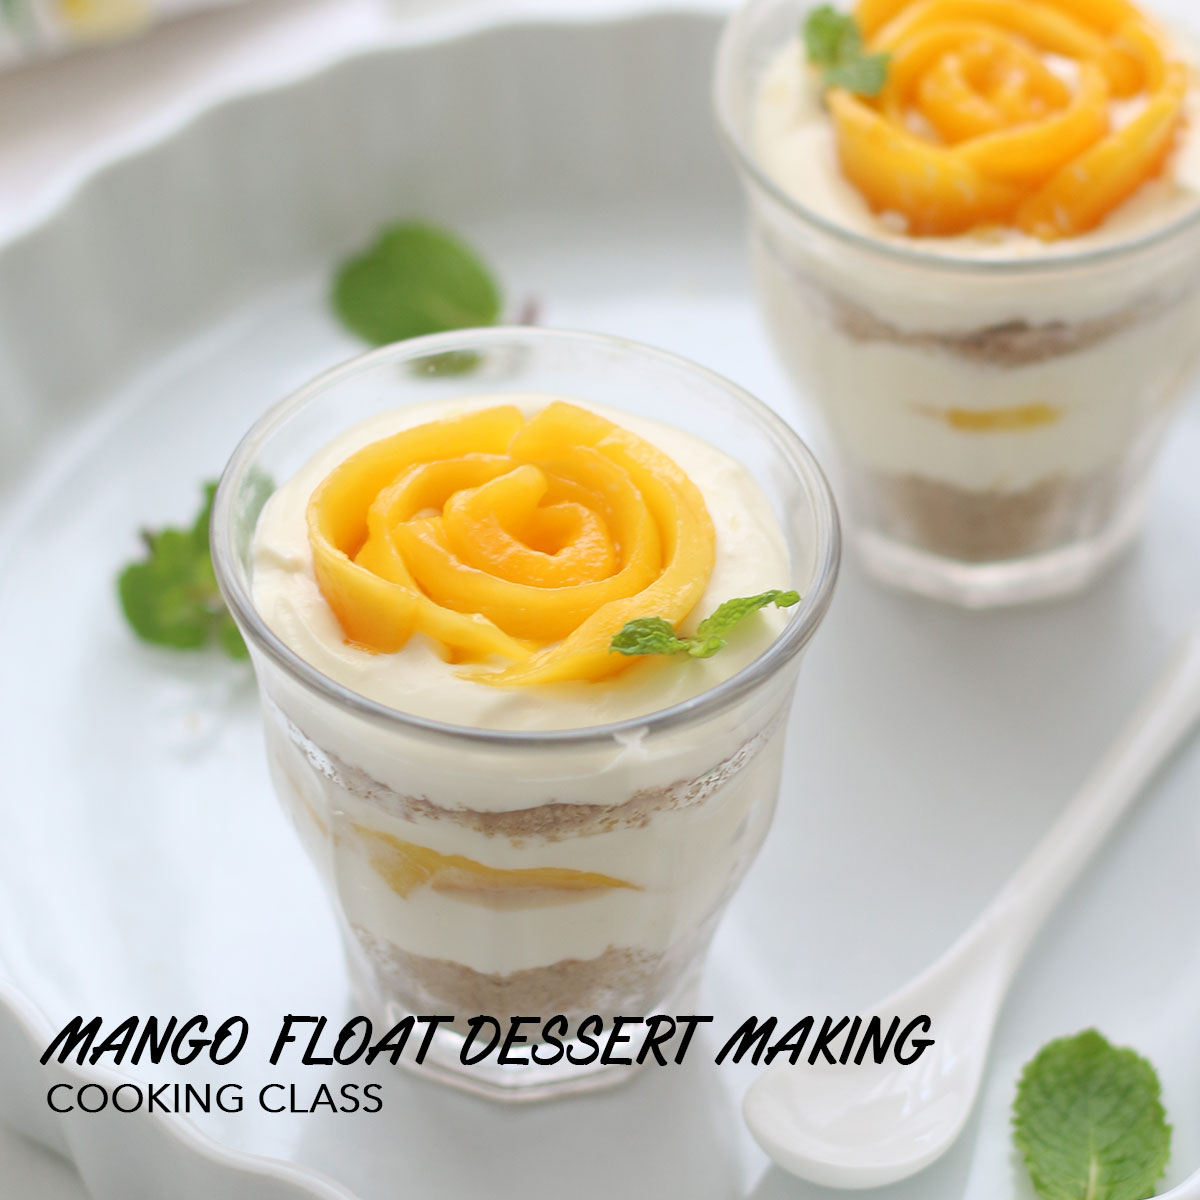 芒果提拉米蘇簡易甜品製作 Mango Float Dessert Making